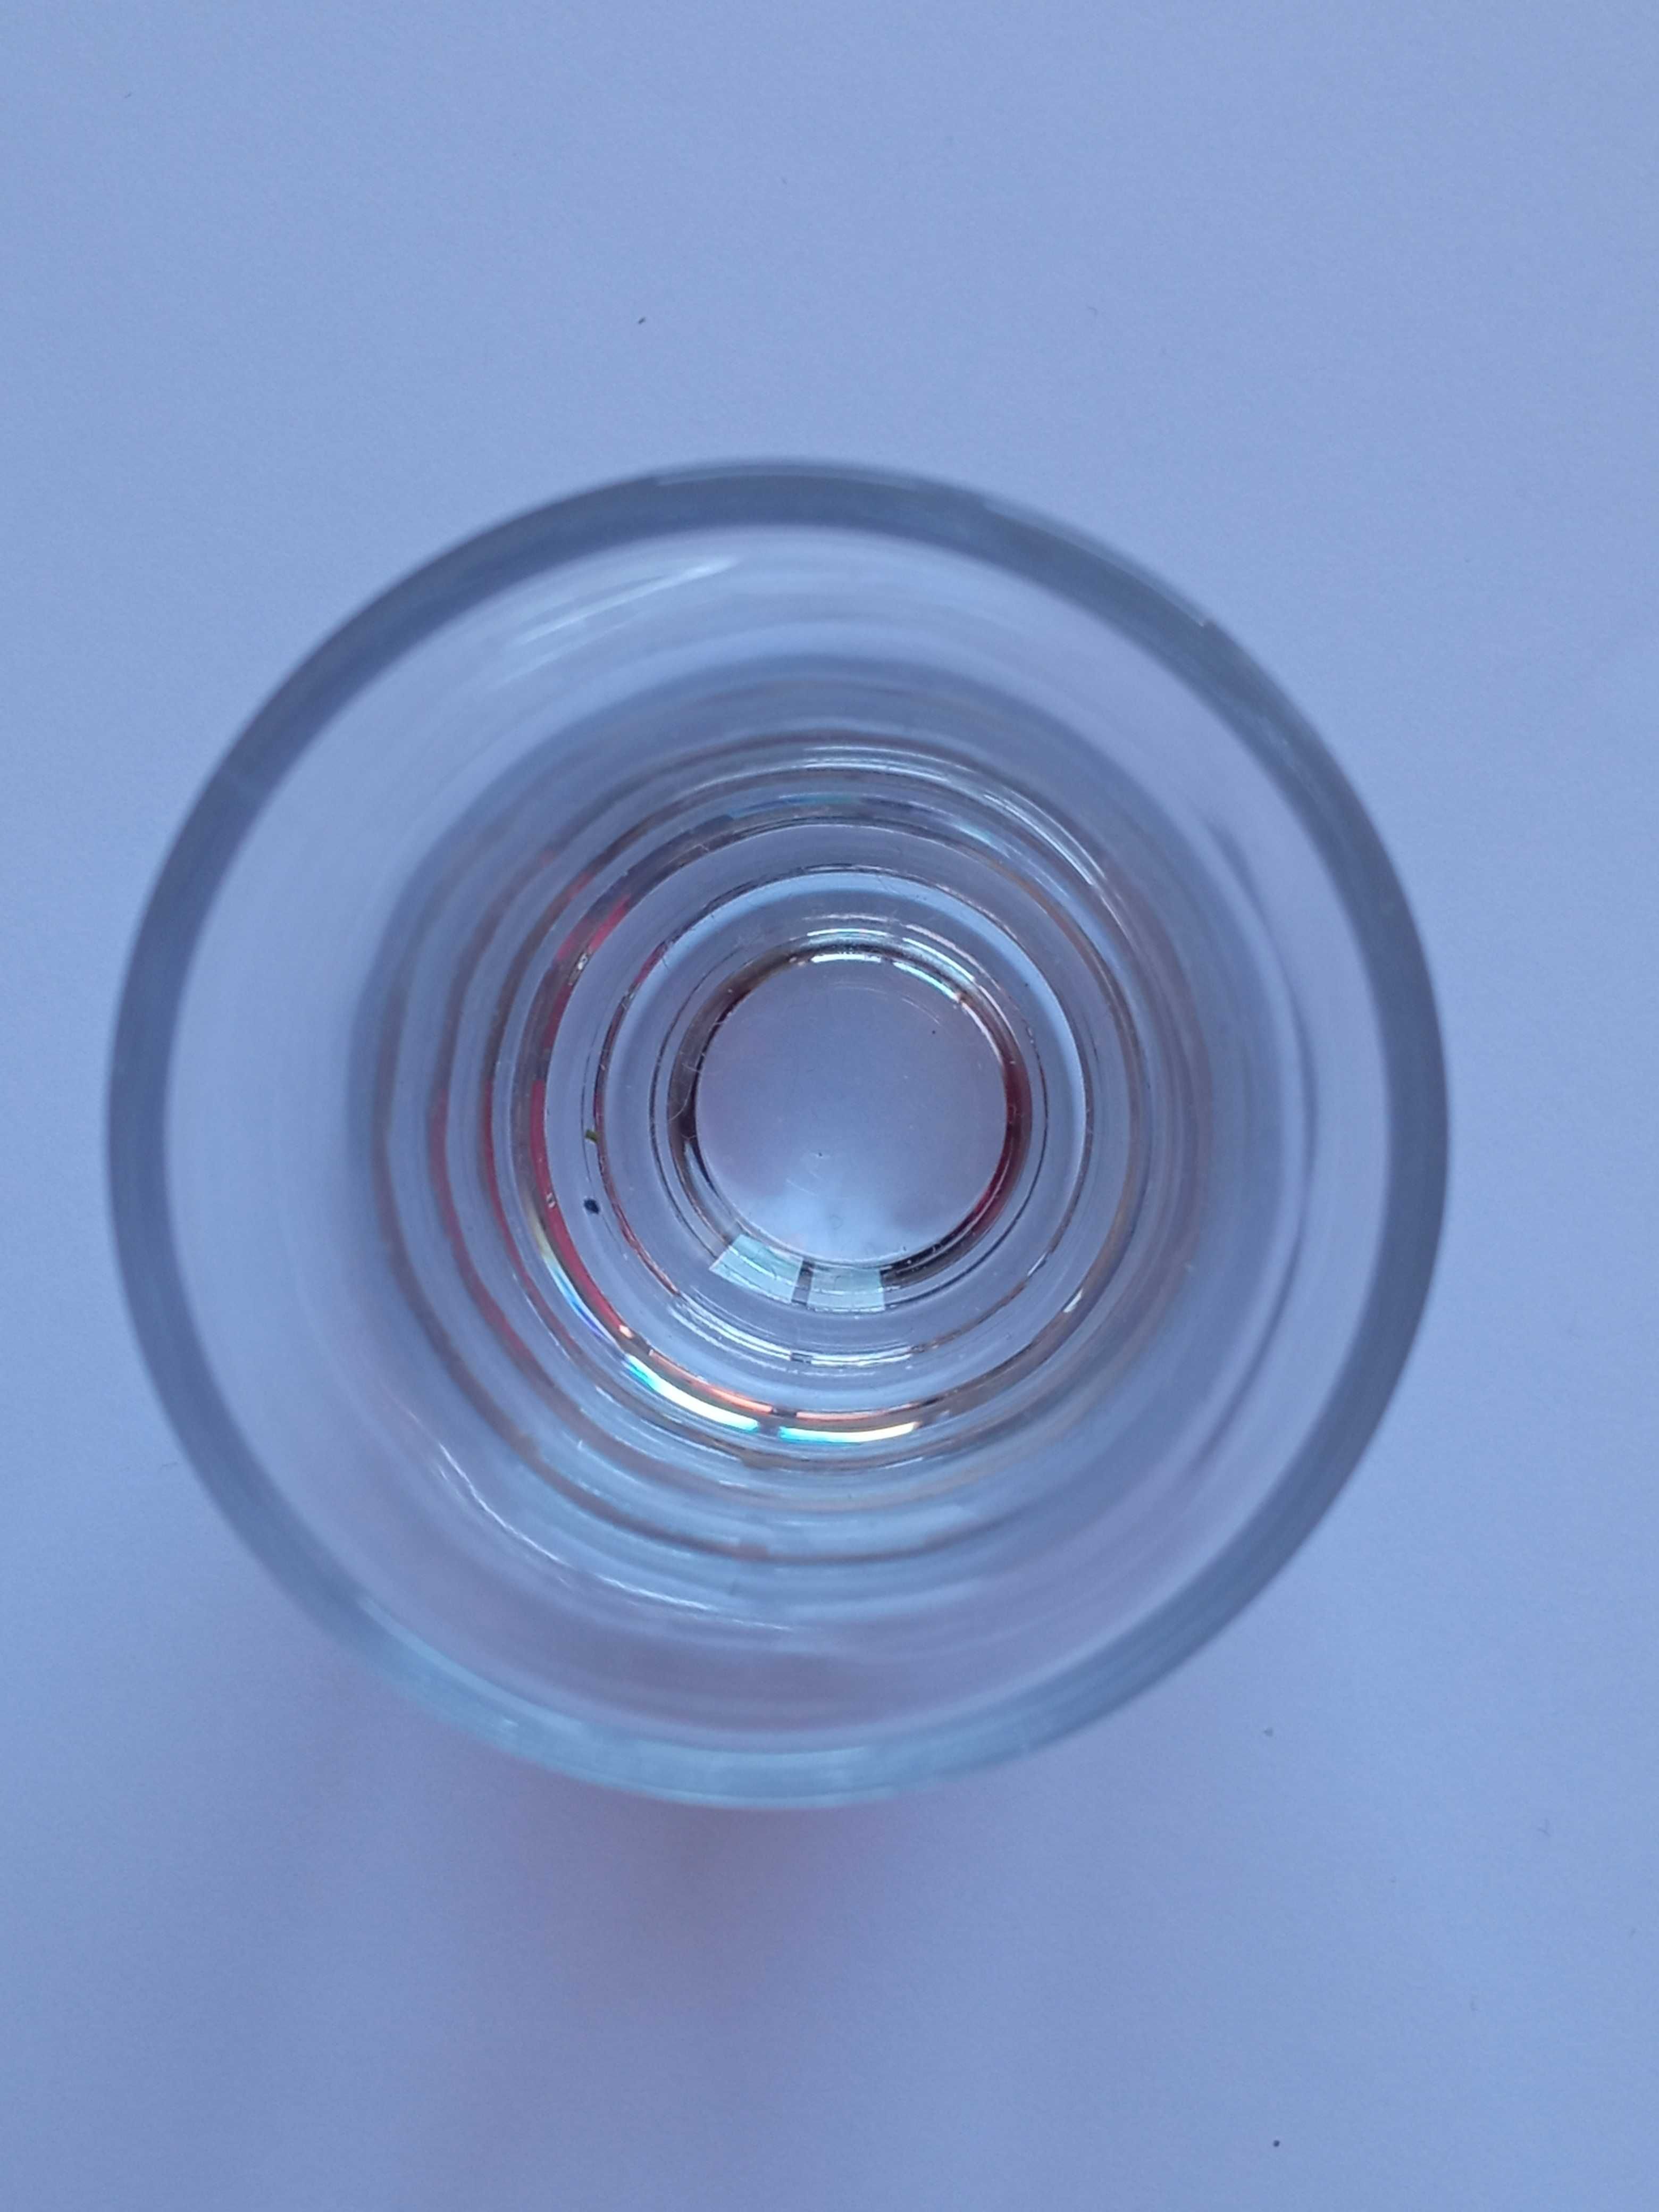 Szklany przezroczysty kieliszek 40 ml 7 cm wysokości kolekcje